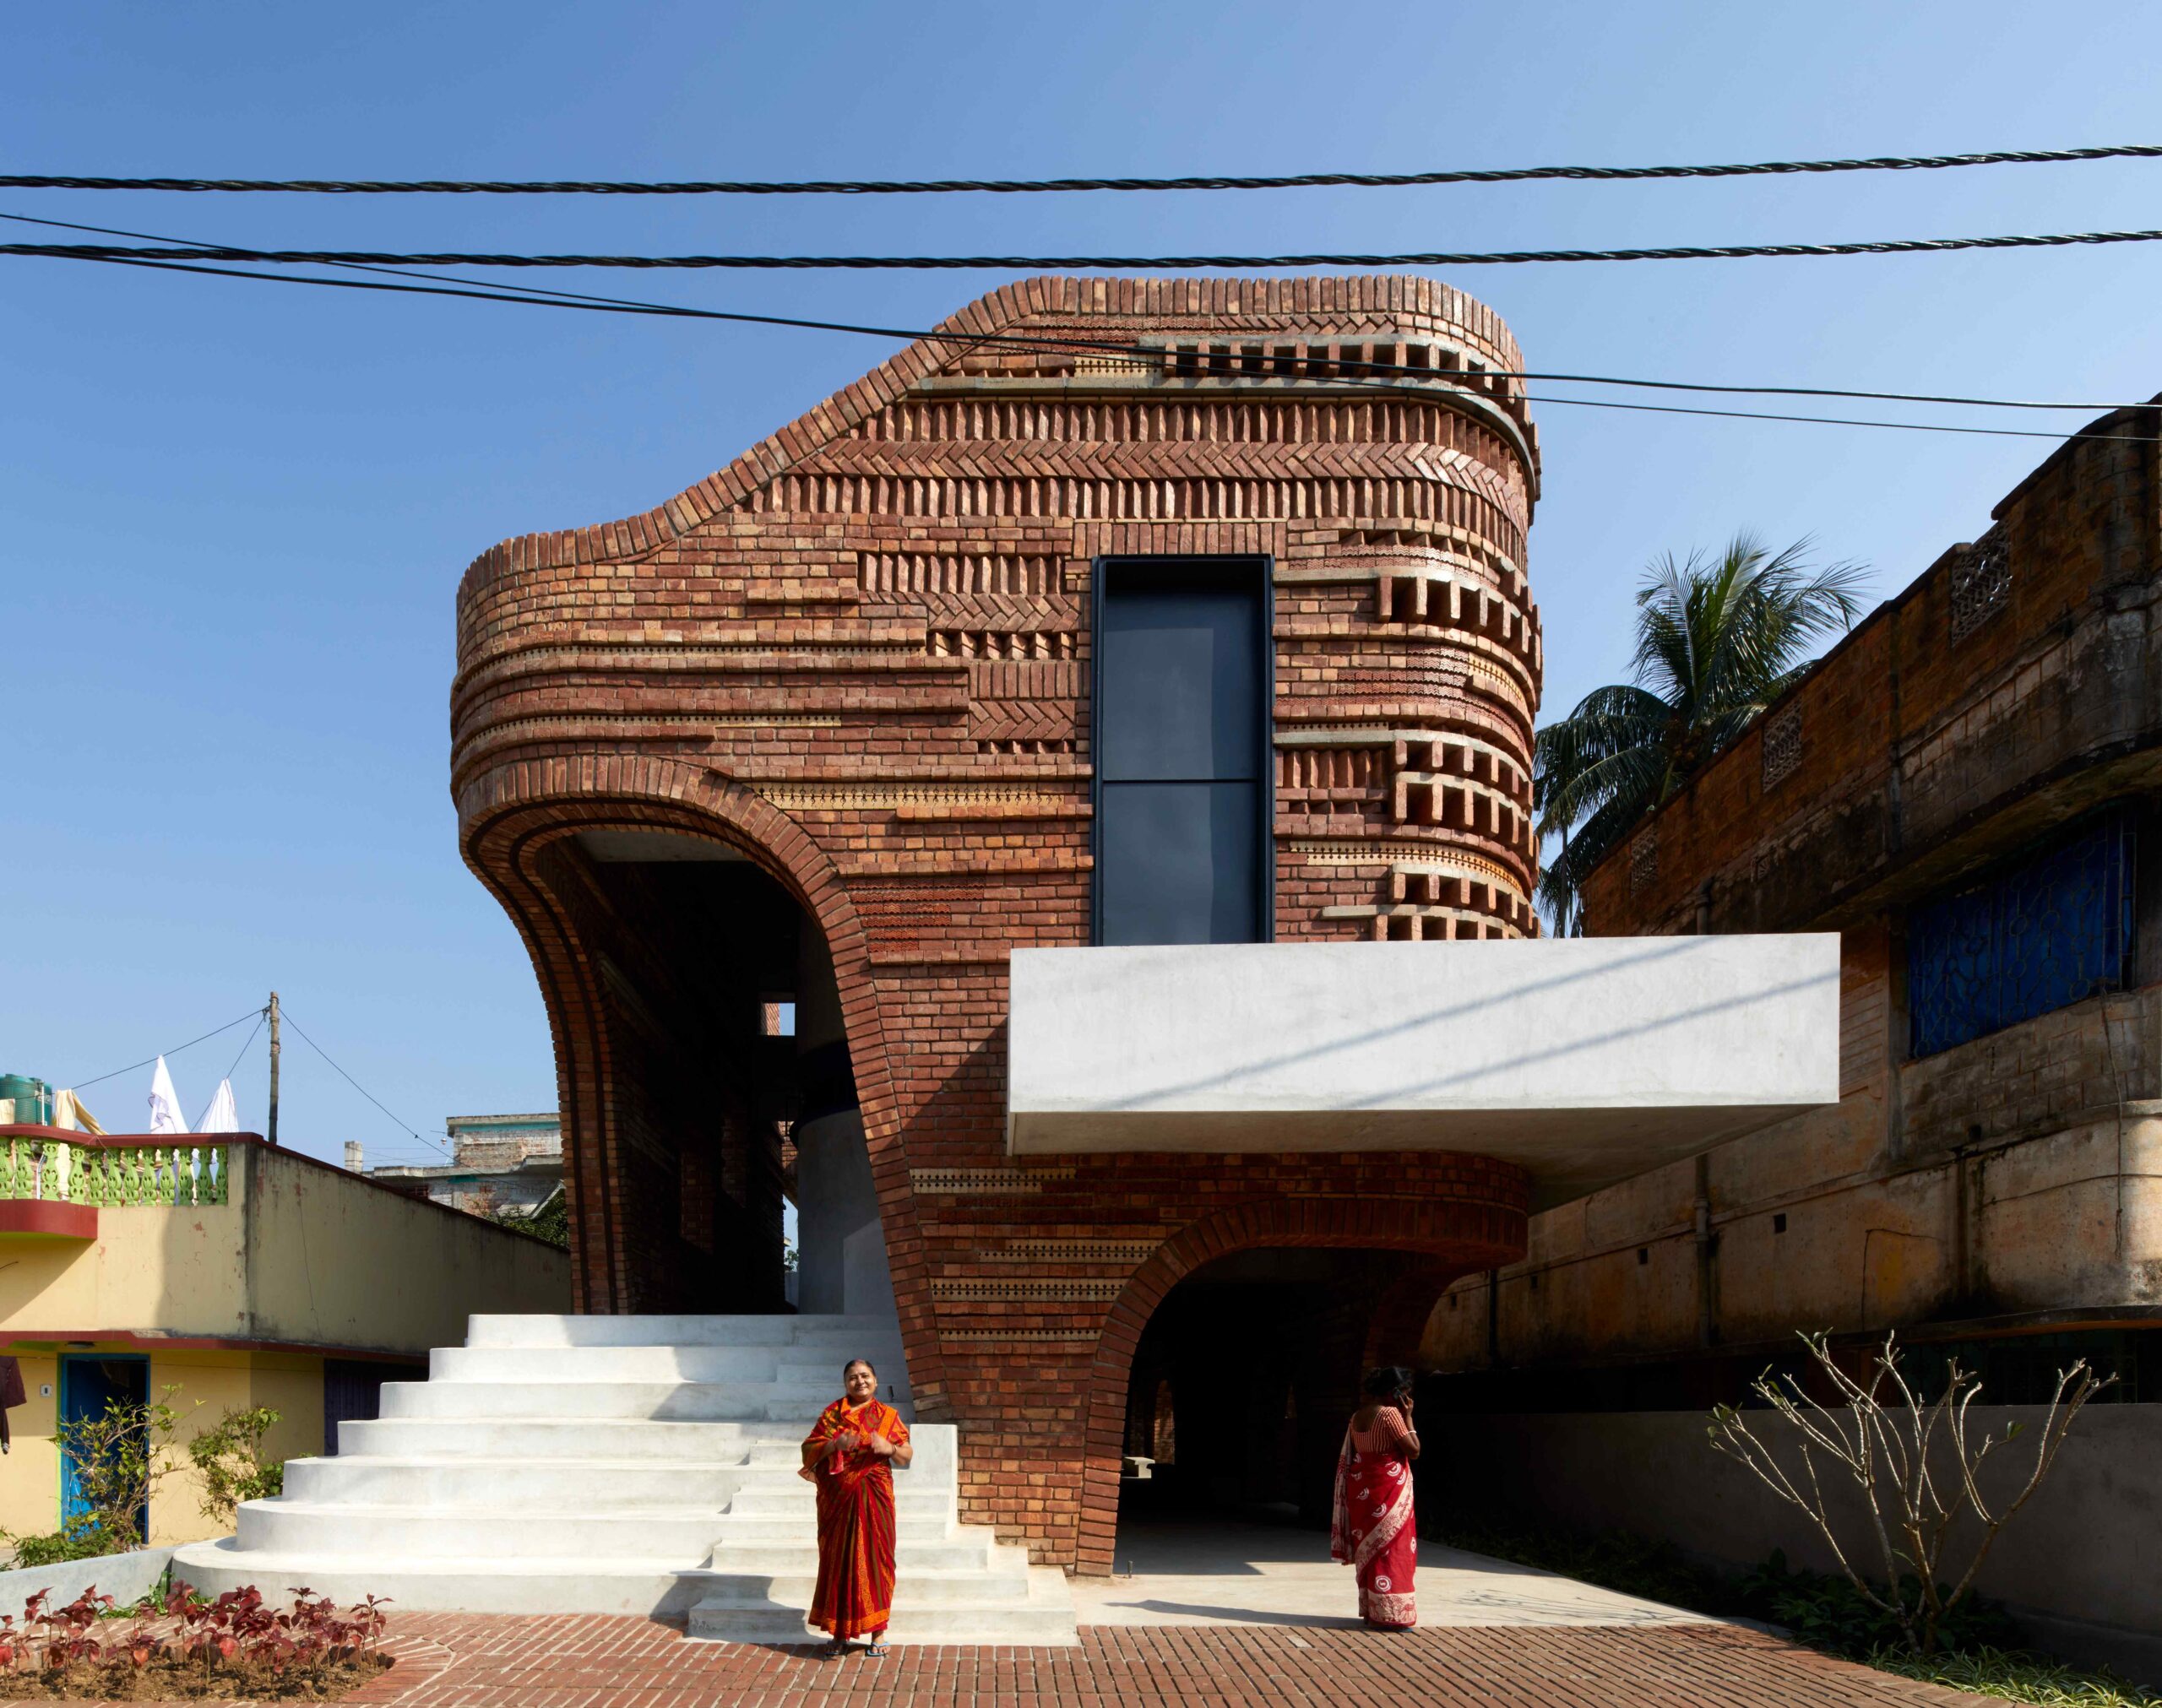 ArchitectureLive!-Architecture in India 70